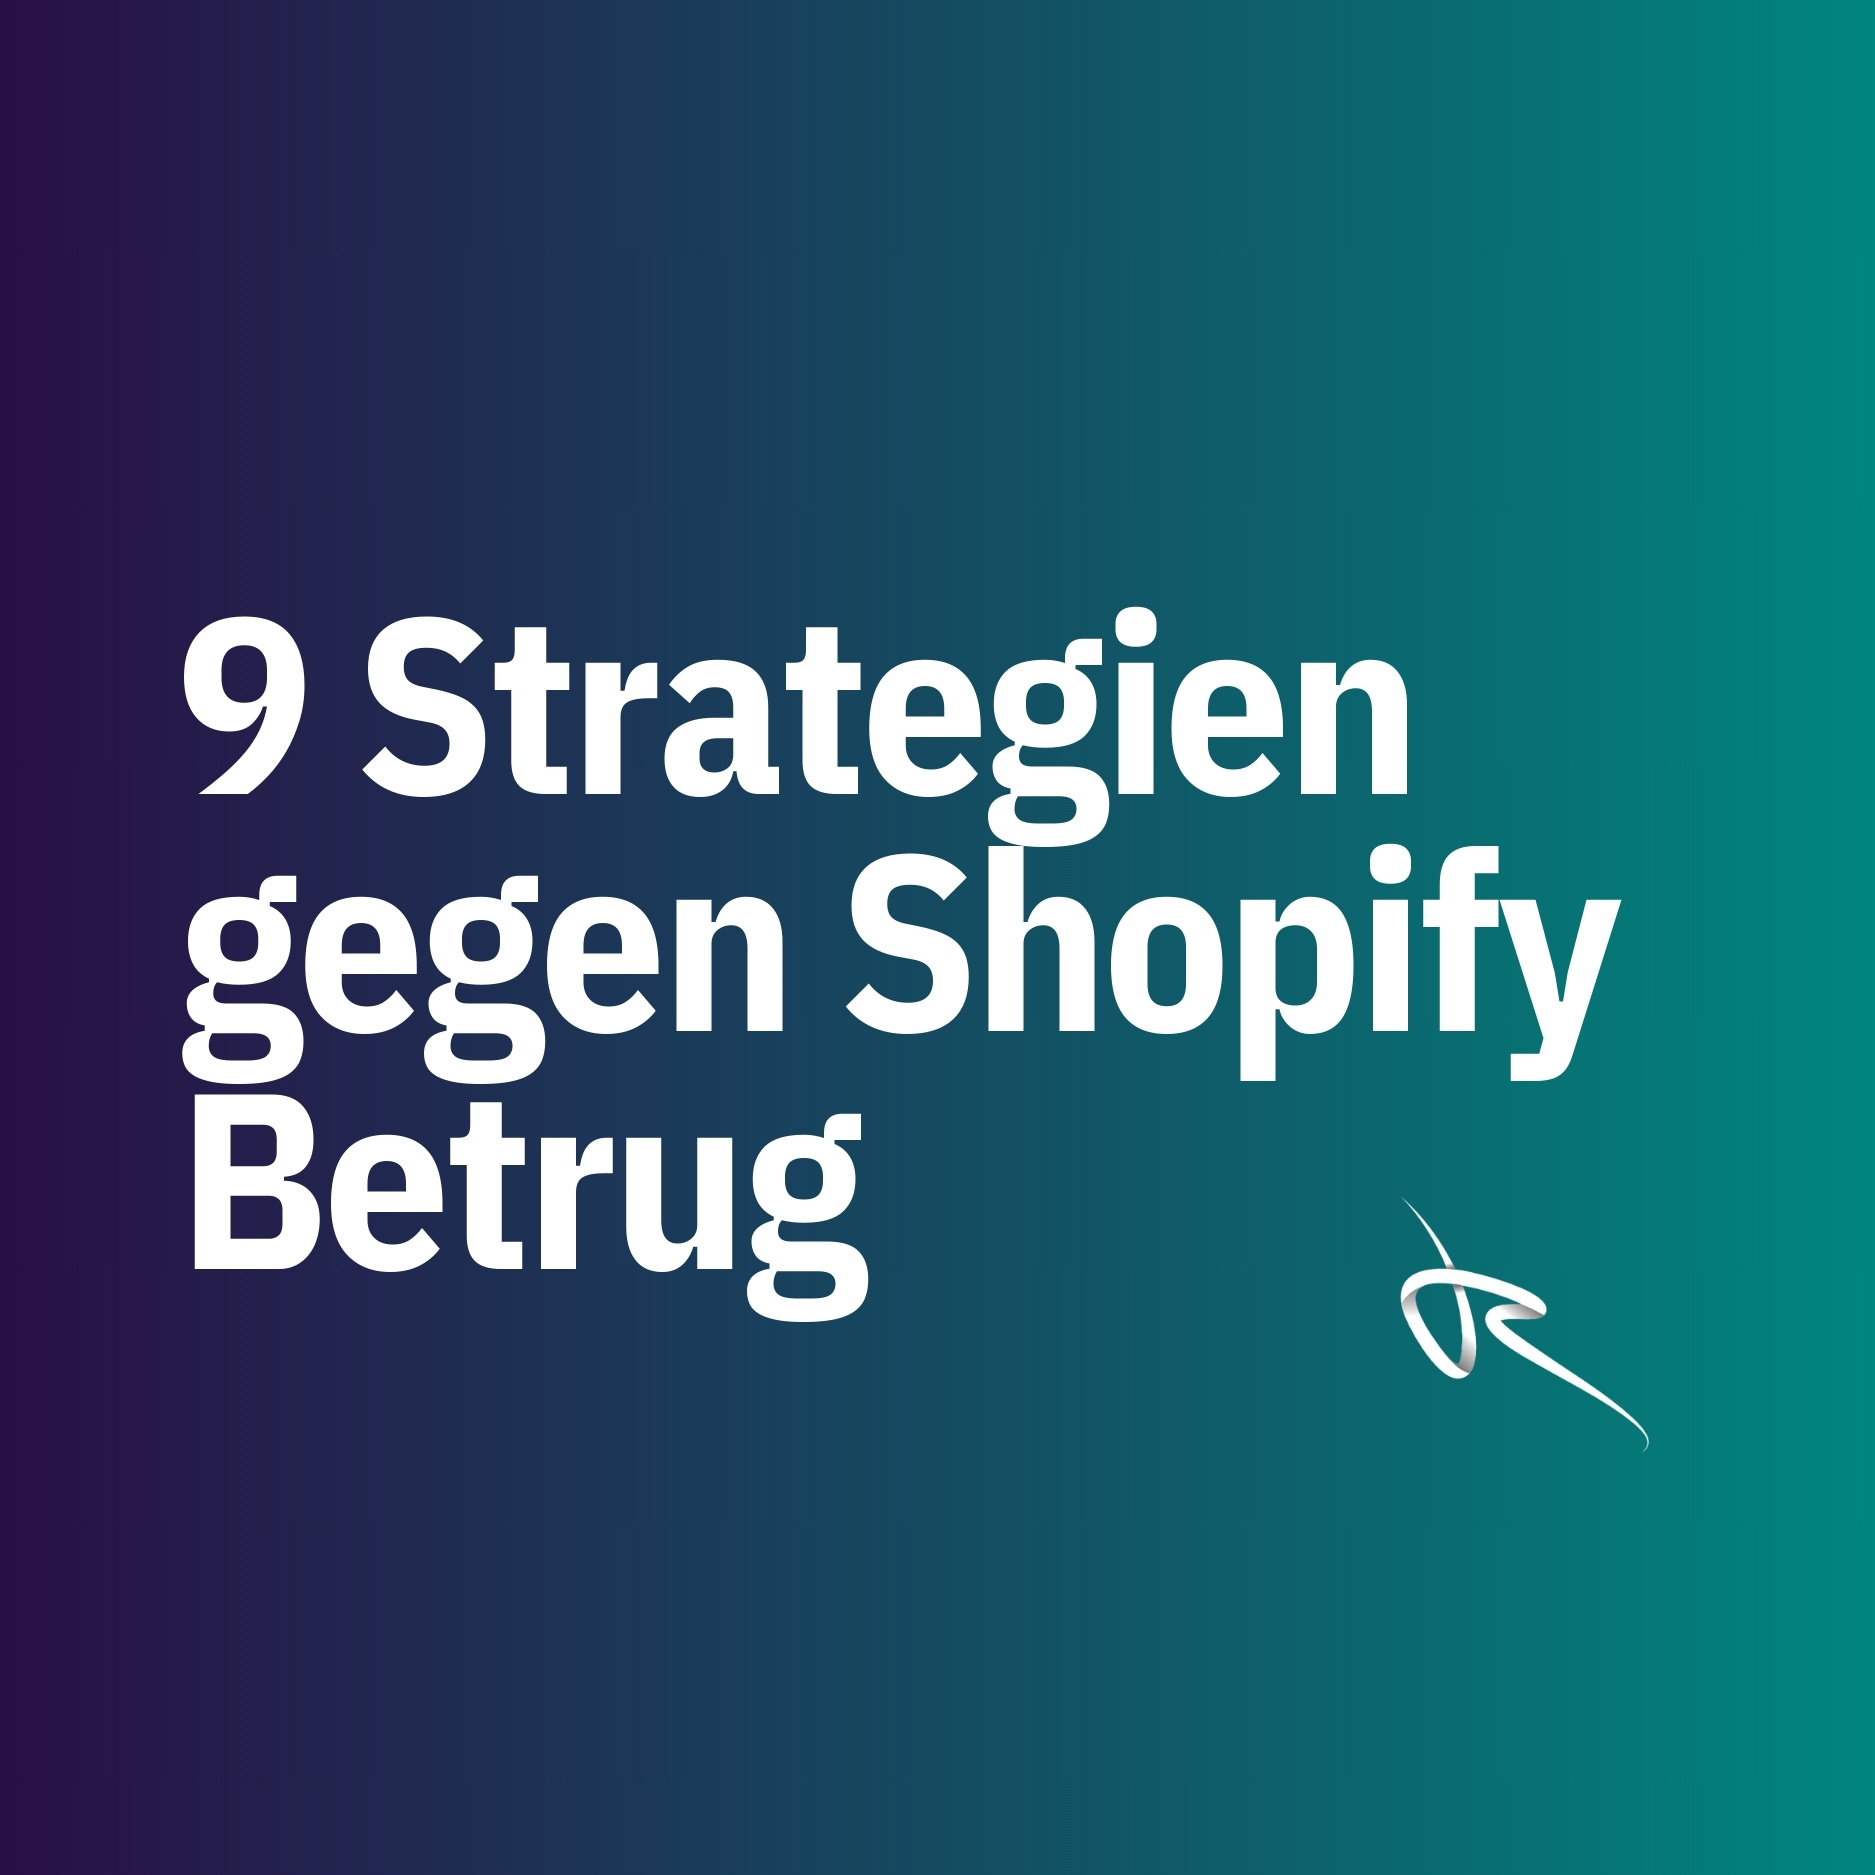 9 Strategien gegen Shopify Betrug